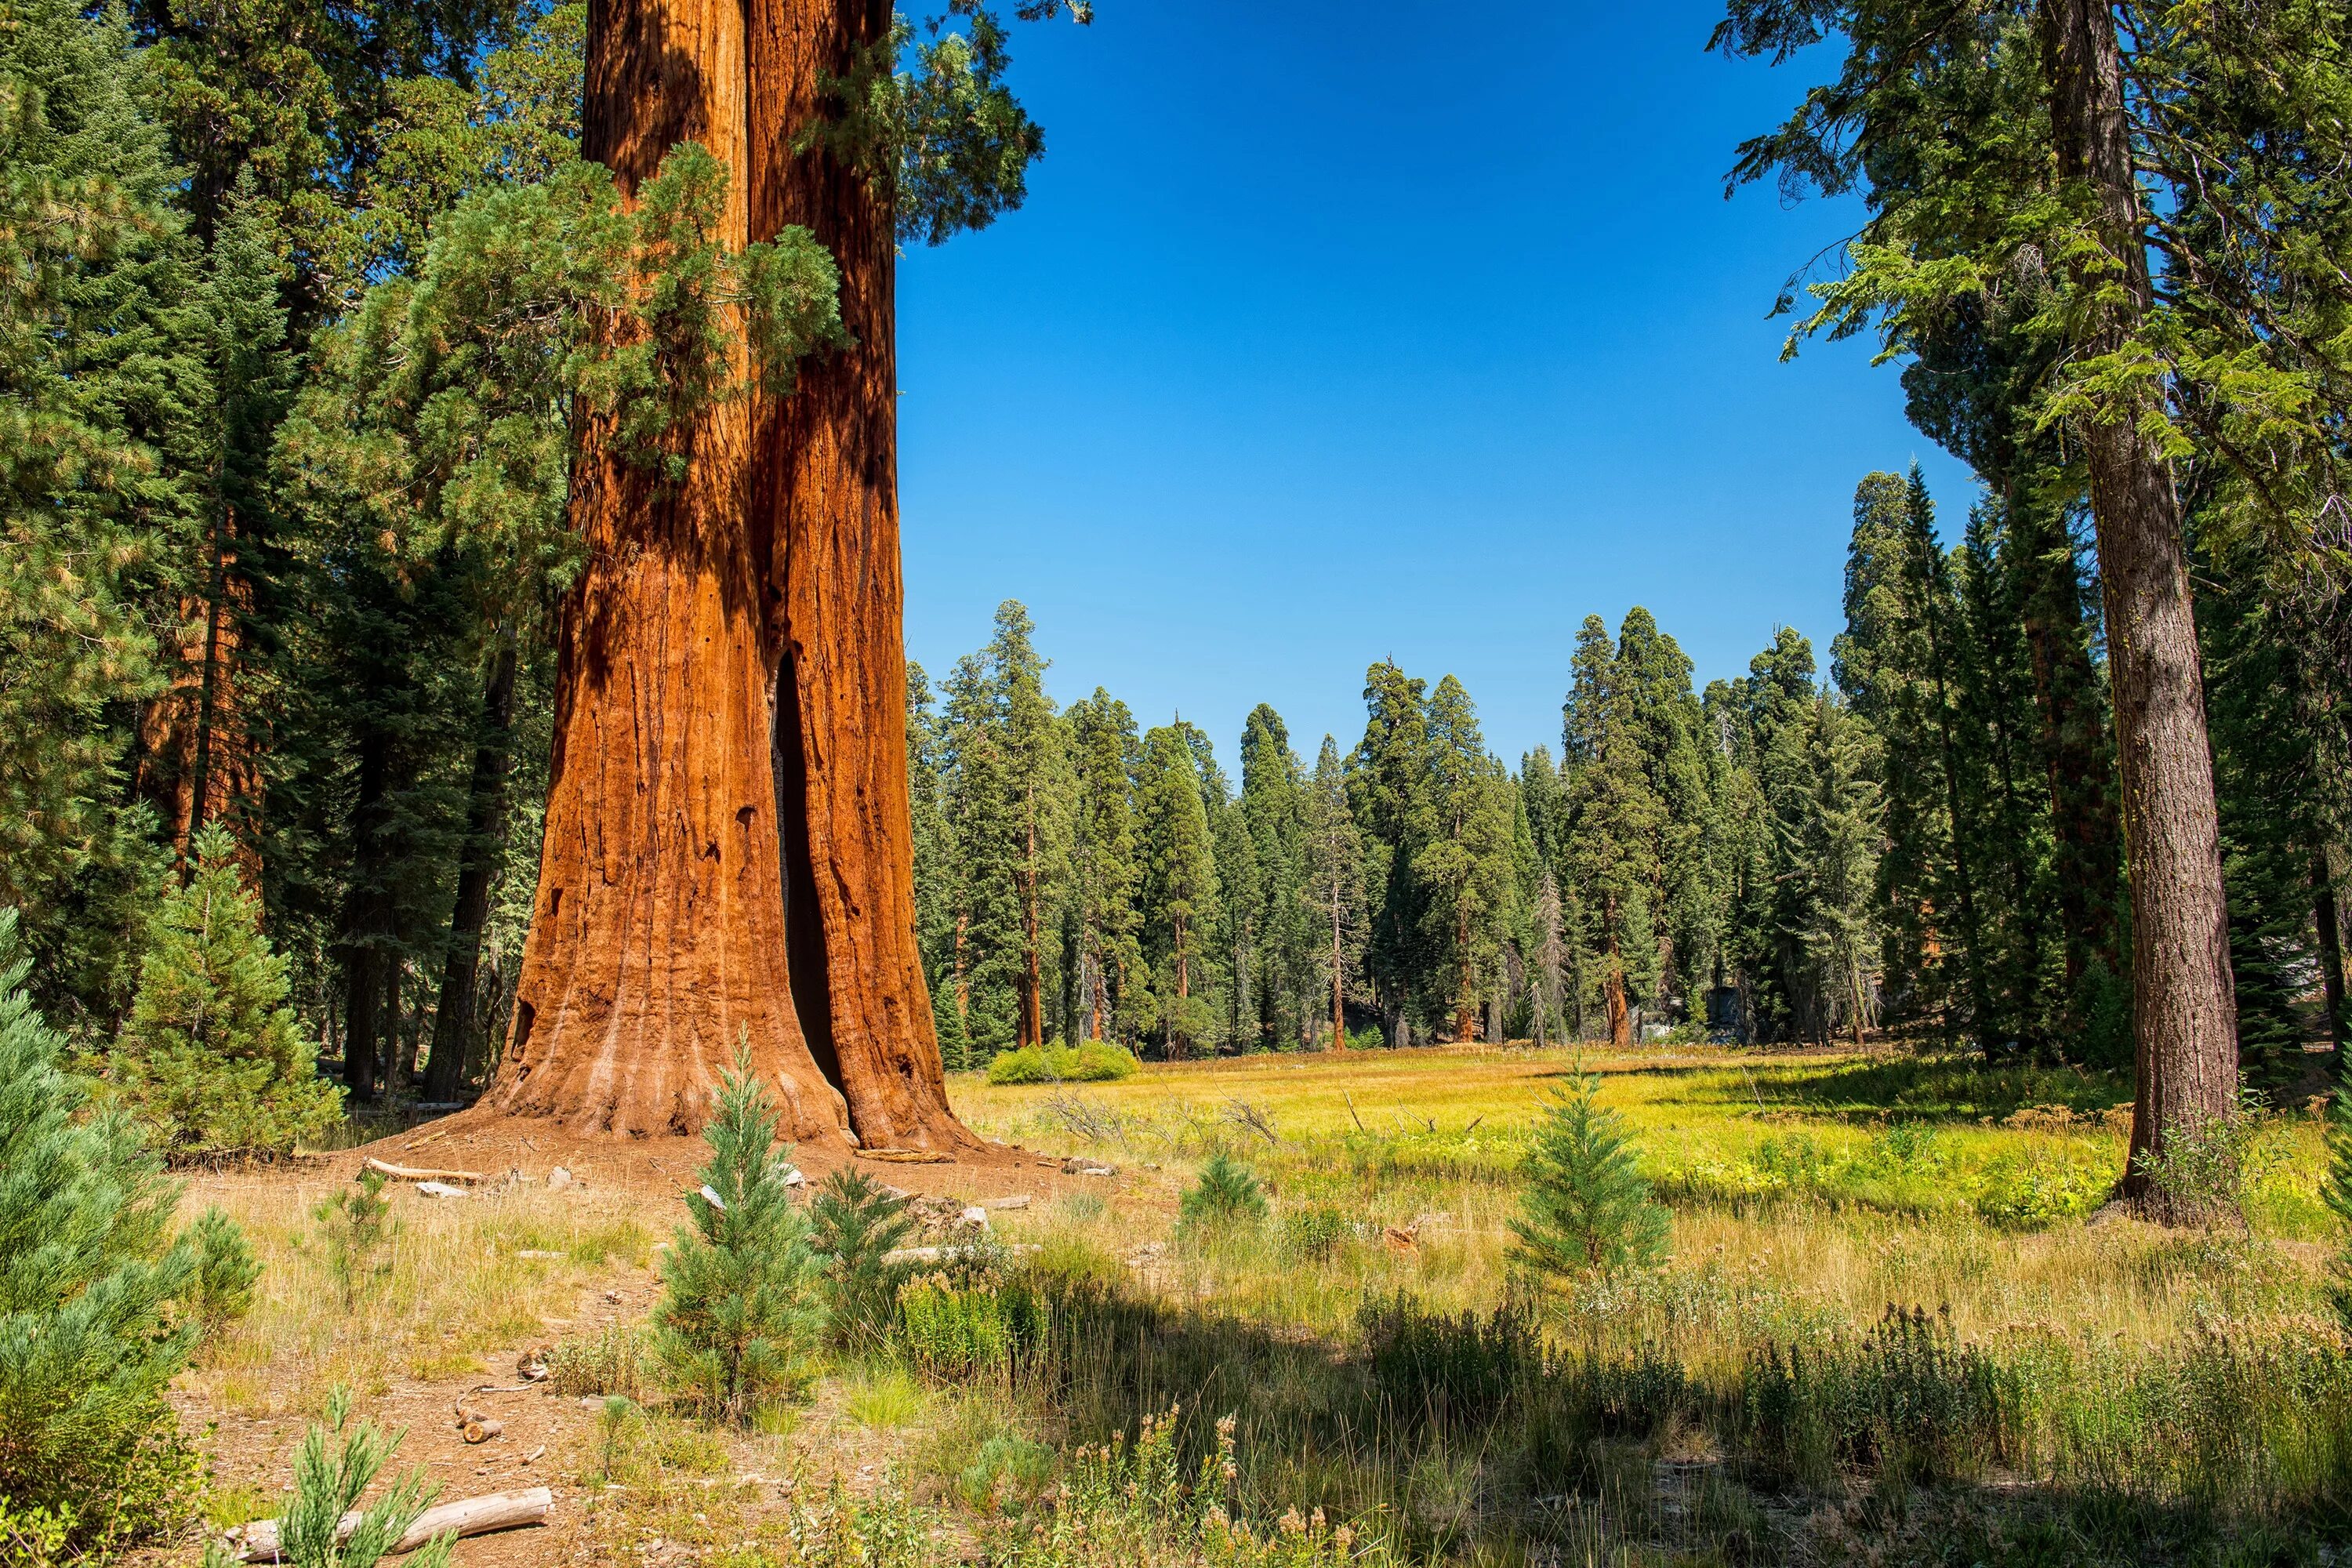 Где больше деревьев. Национальный парк Секвойя США. Парк Секвойя Калифорния. Секвойя дерево. Лес с секвойями в США.